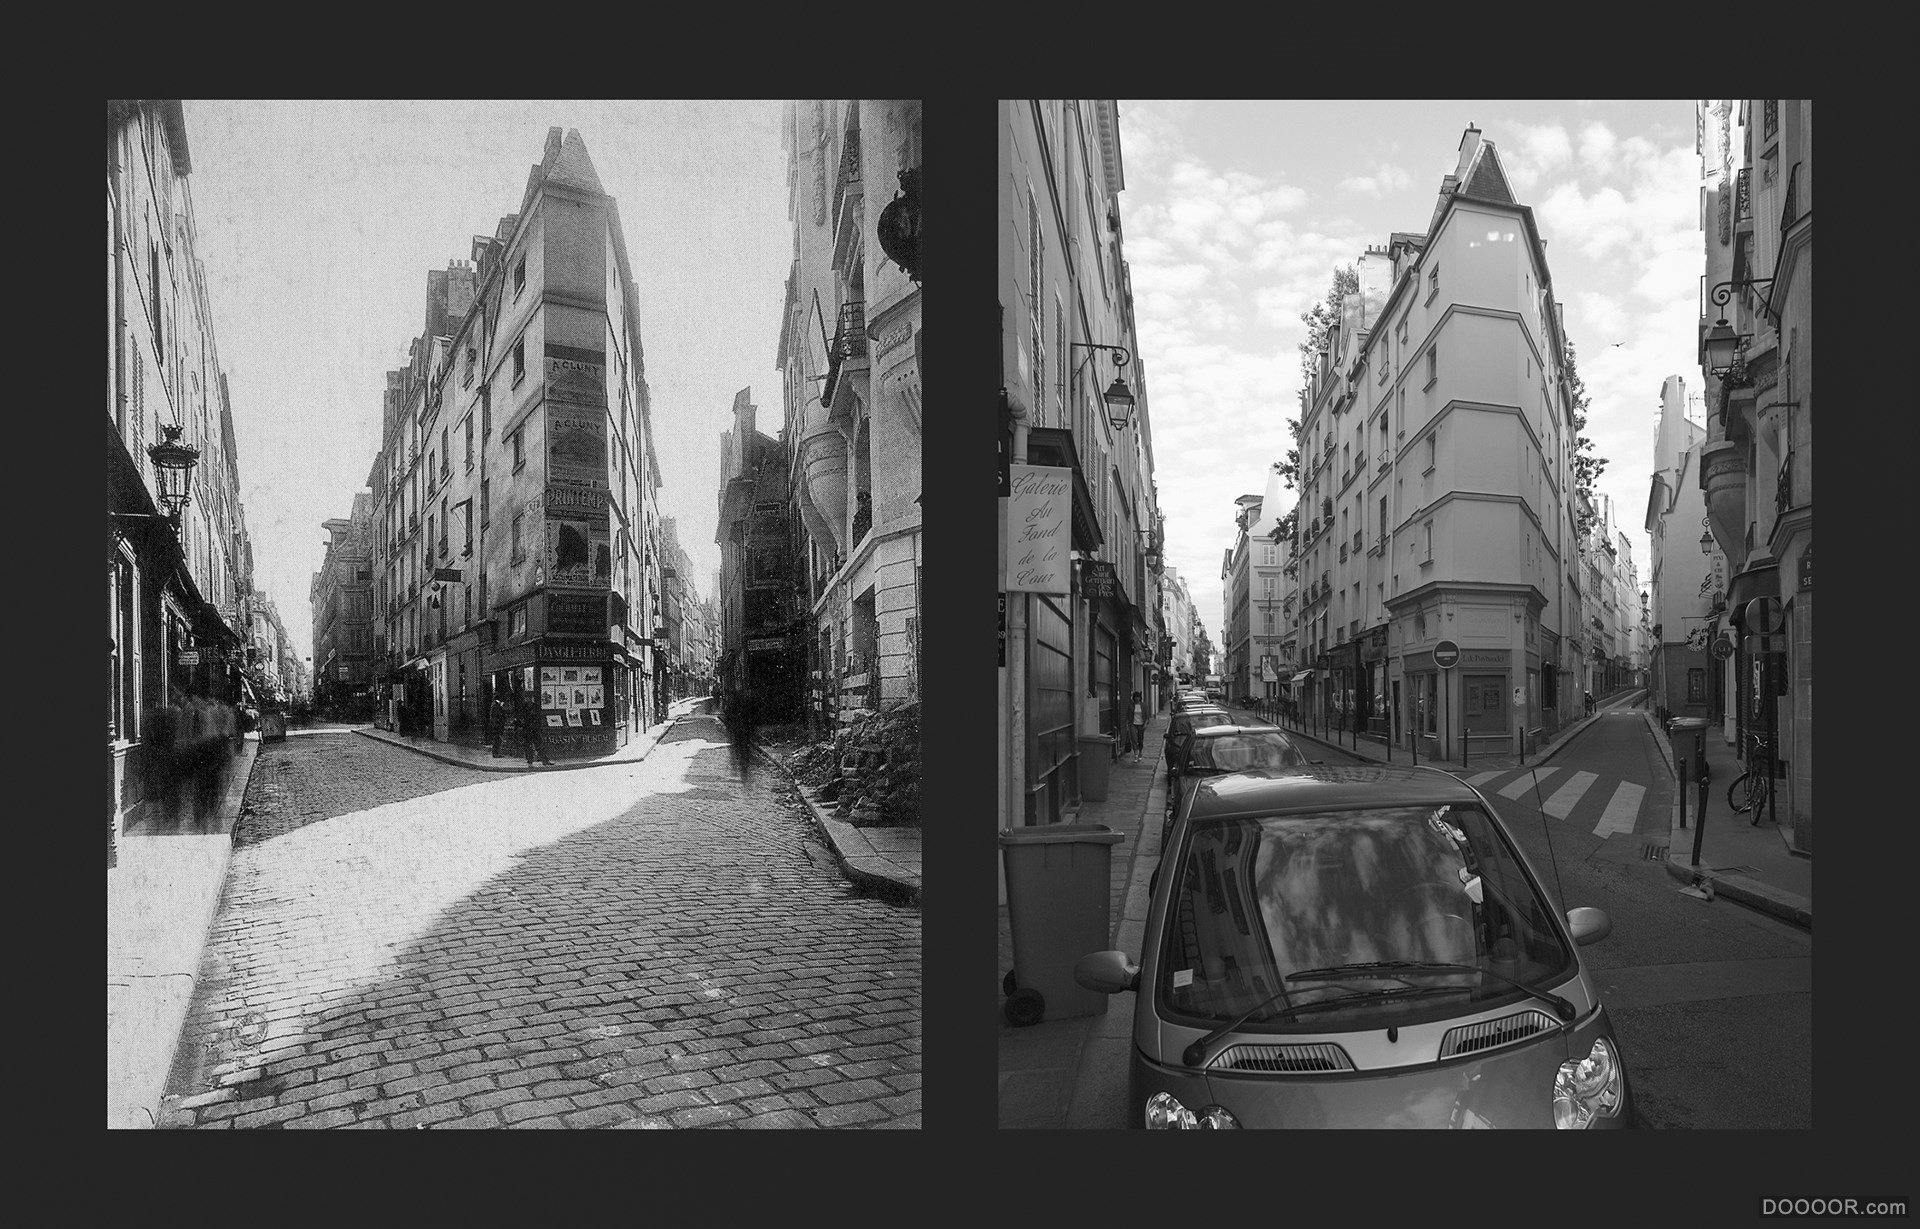 过去与现在-巴黎街头照片对比 [50P] (24).jpg